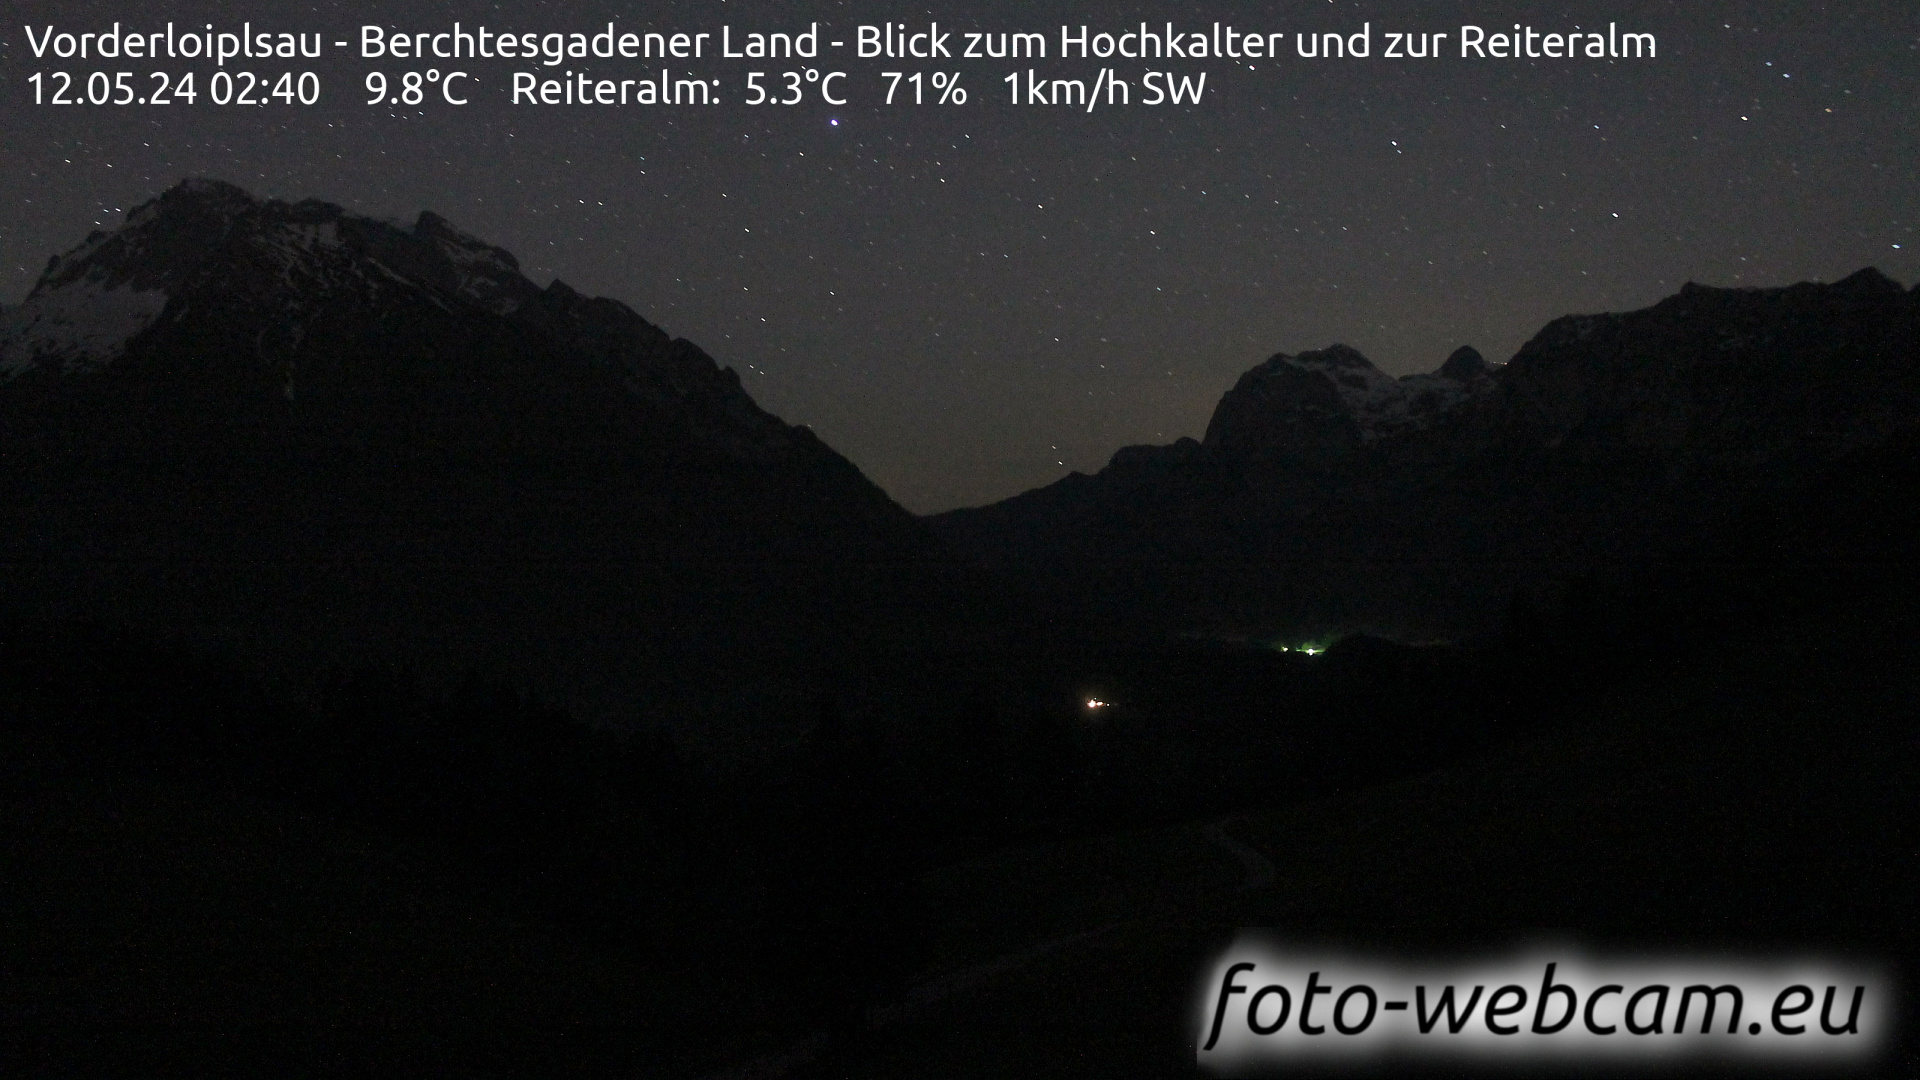 Ramsau bei Berchtesgaden Thu. 02:48